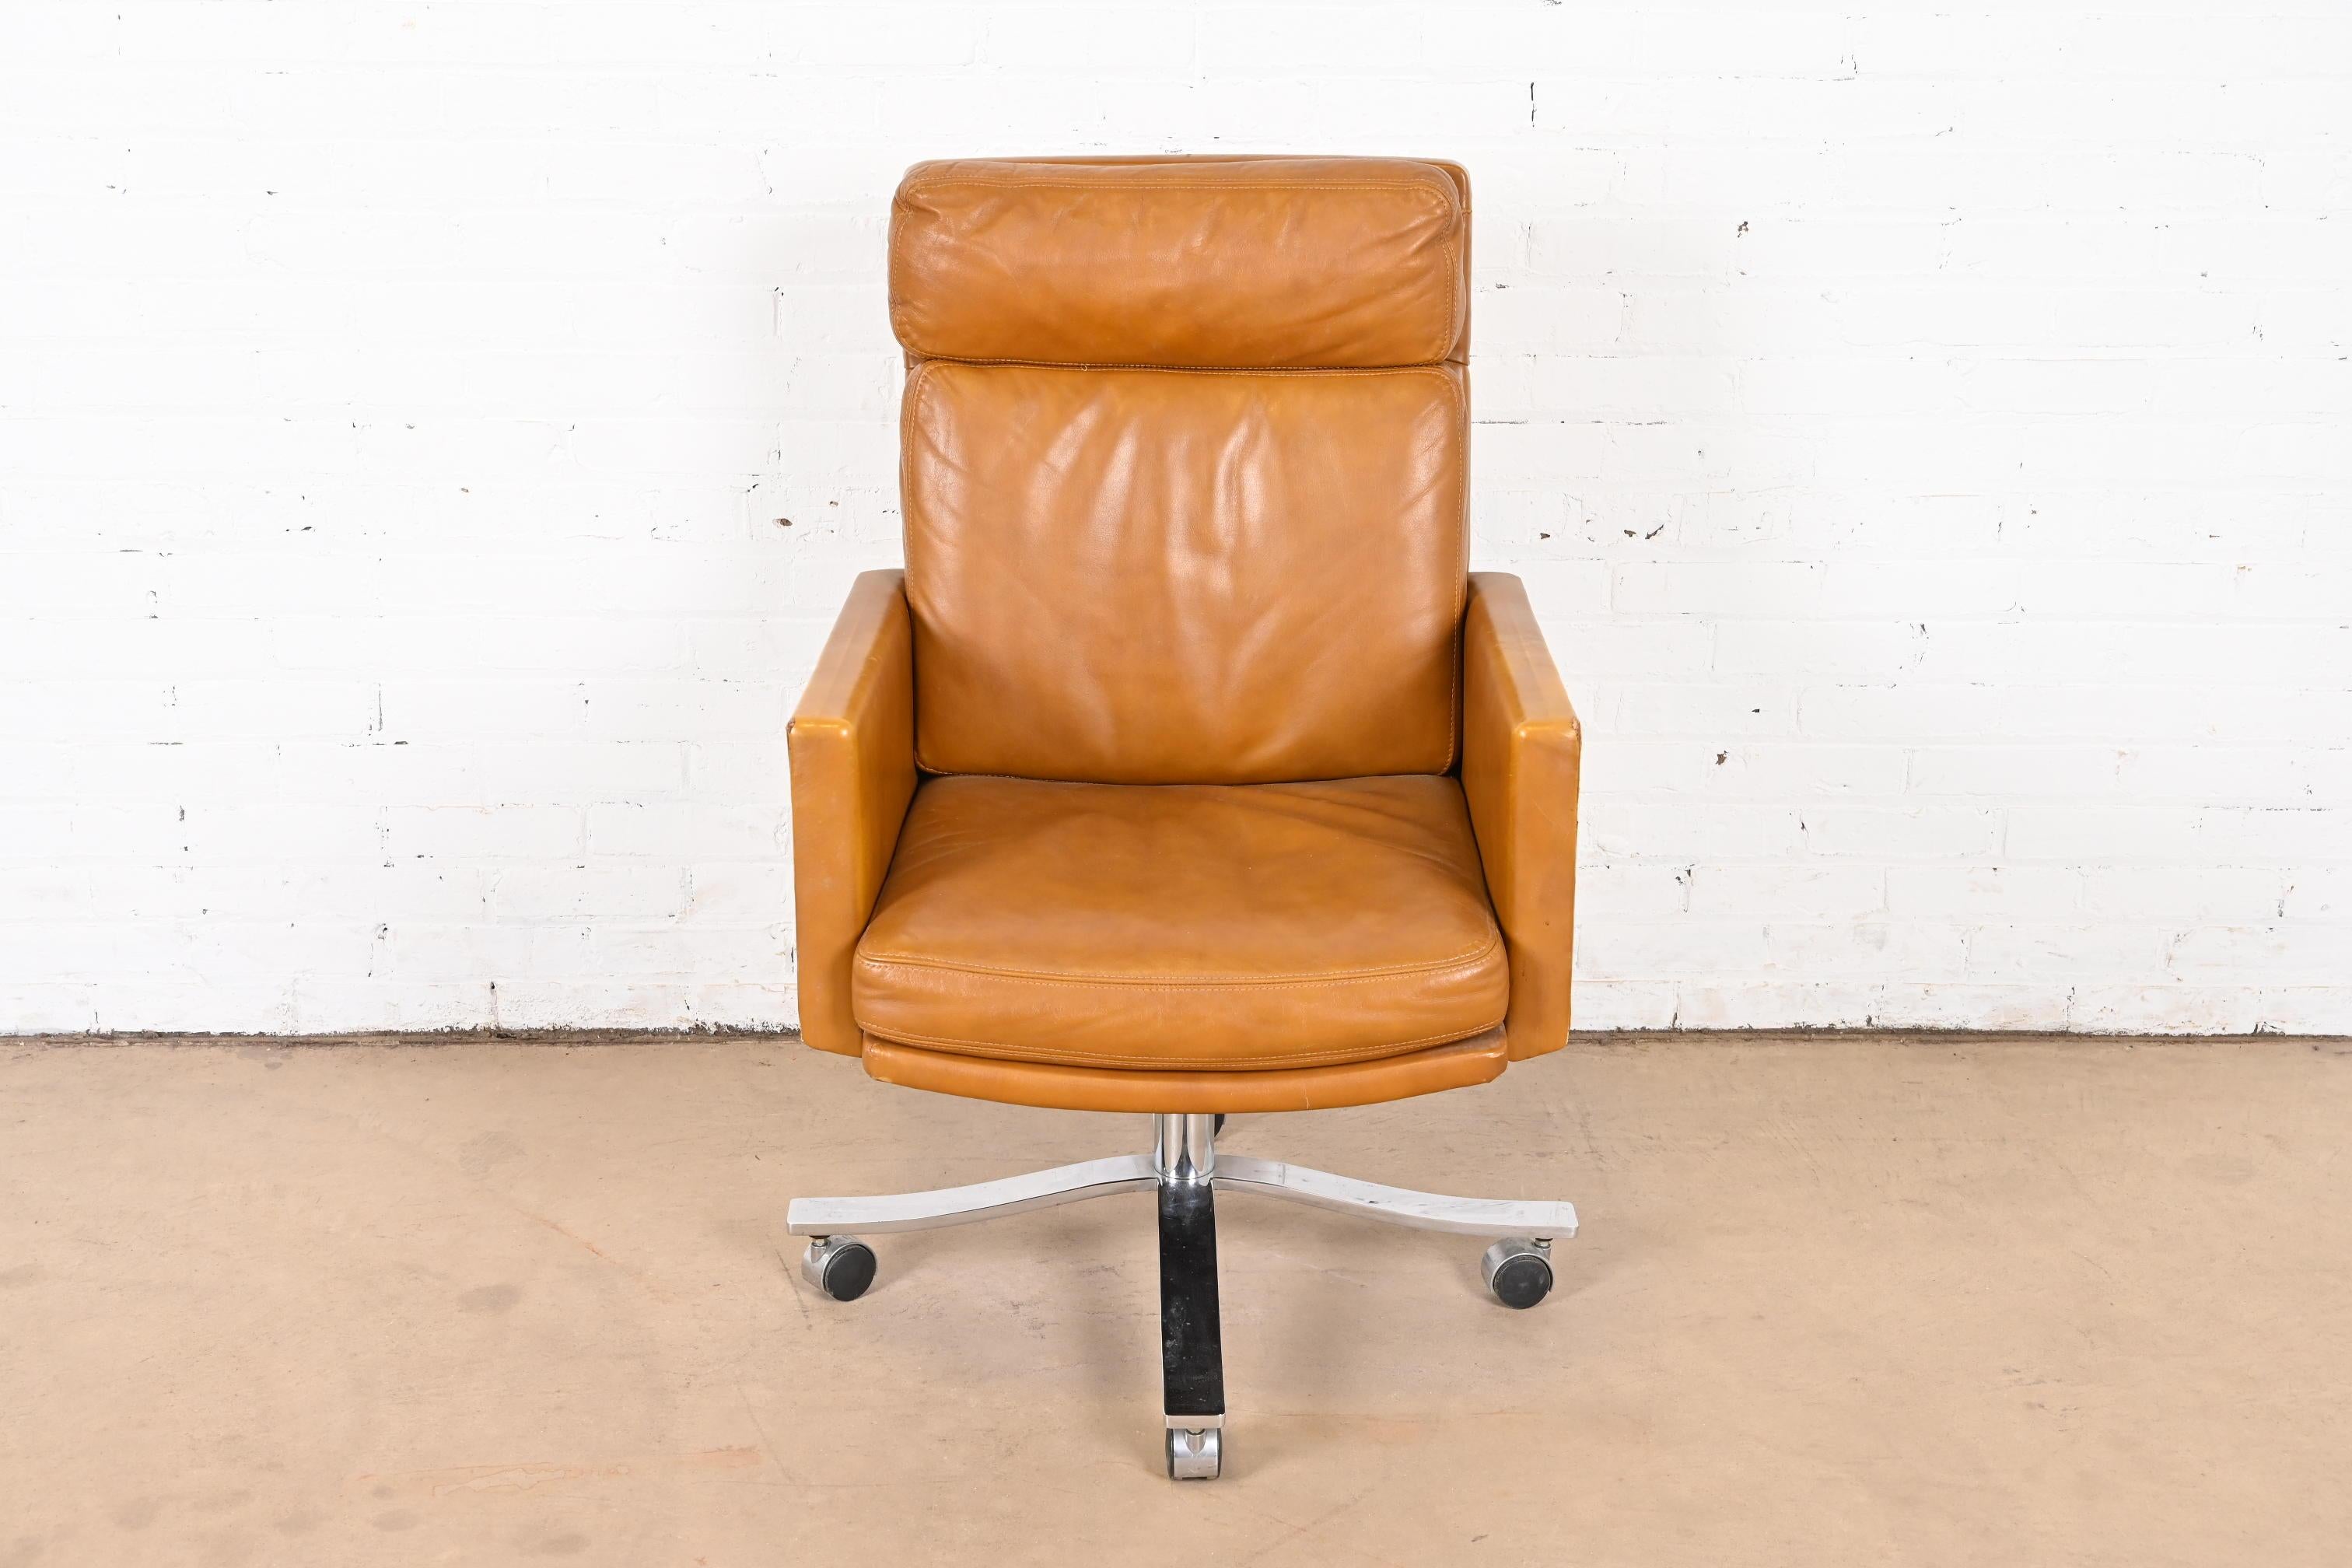 Une belle et très confortable chaise de bureau pivotante en cuir de style moderne du milieu du siècle.

Par Stow Davis

USA, Circa 1960

Superbe revêtement en cuir marron, avec base chromée et roulettes noires.

Dimensions : 28,5 